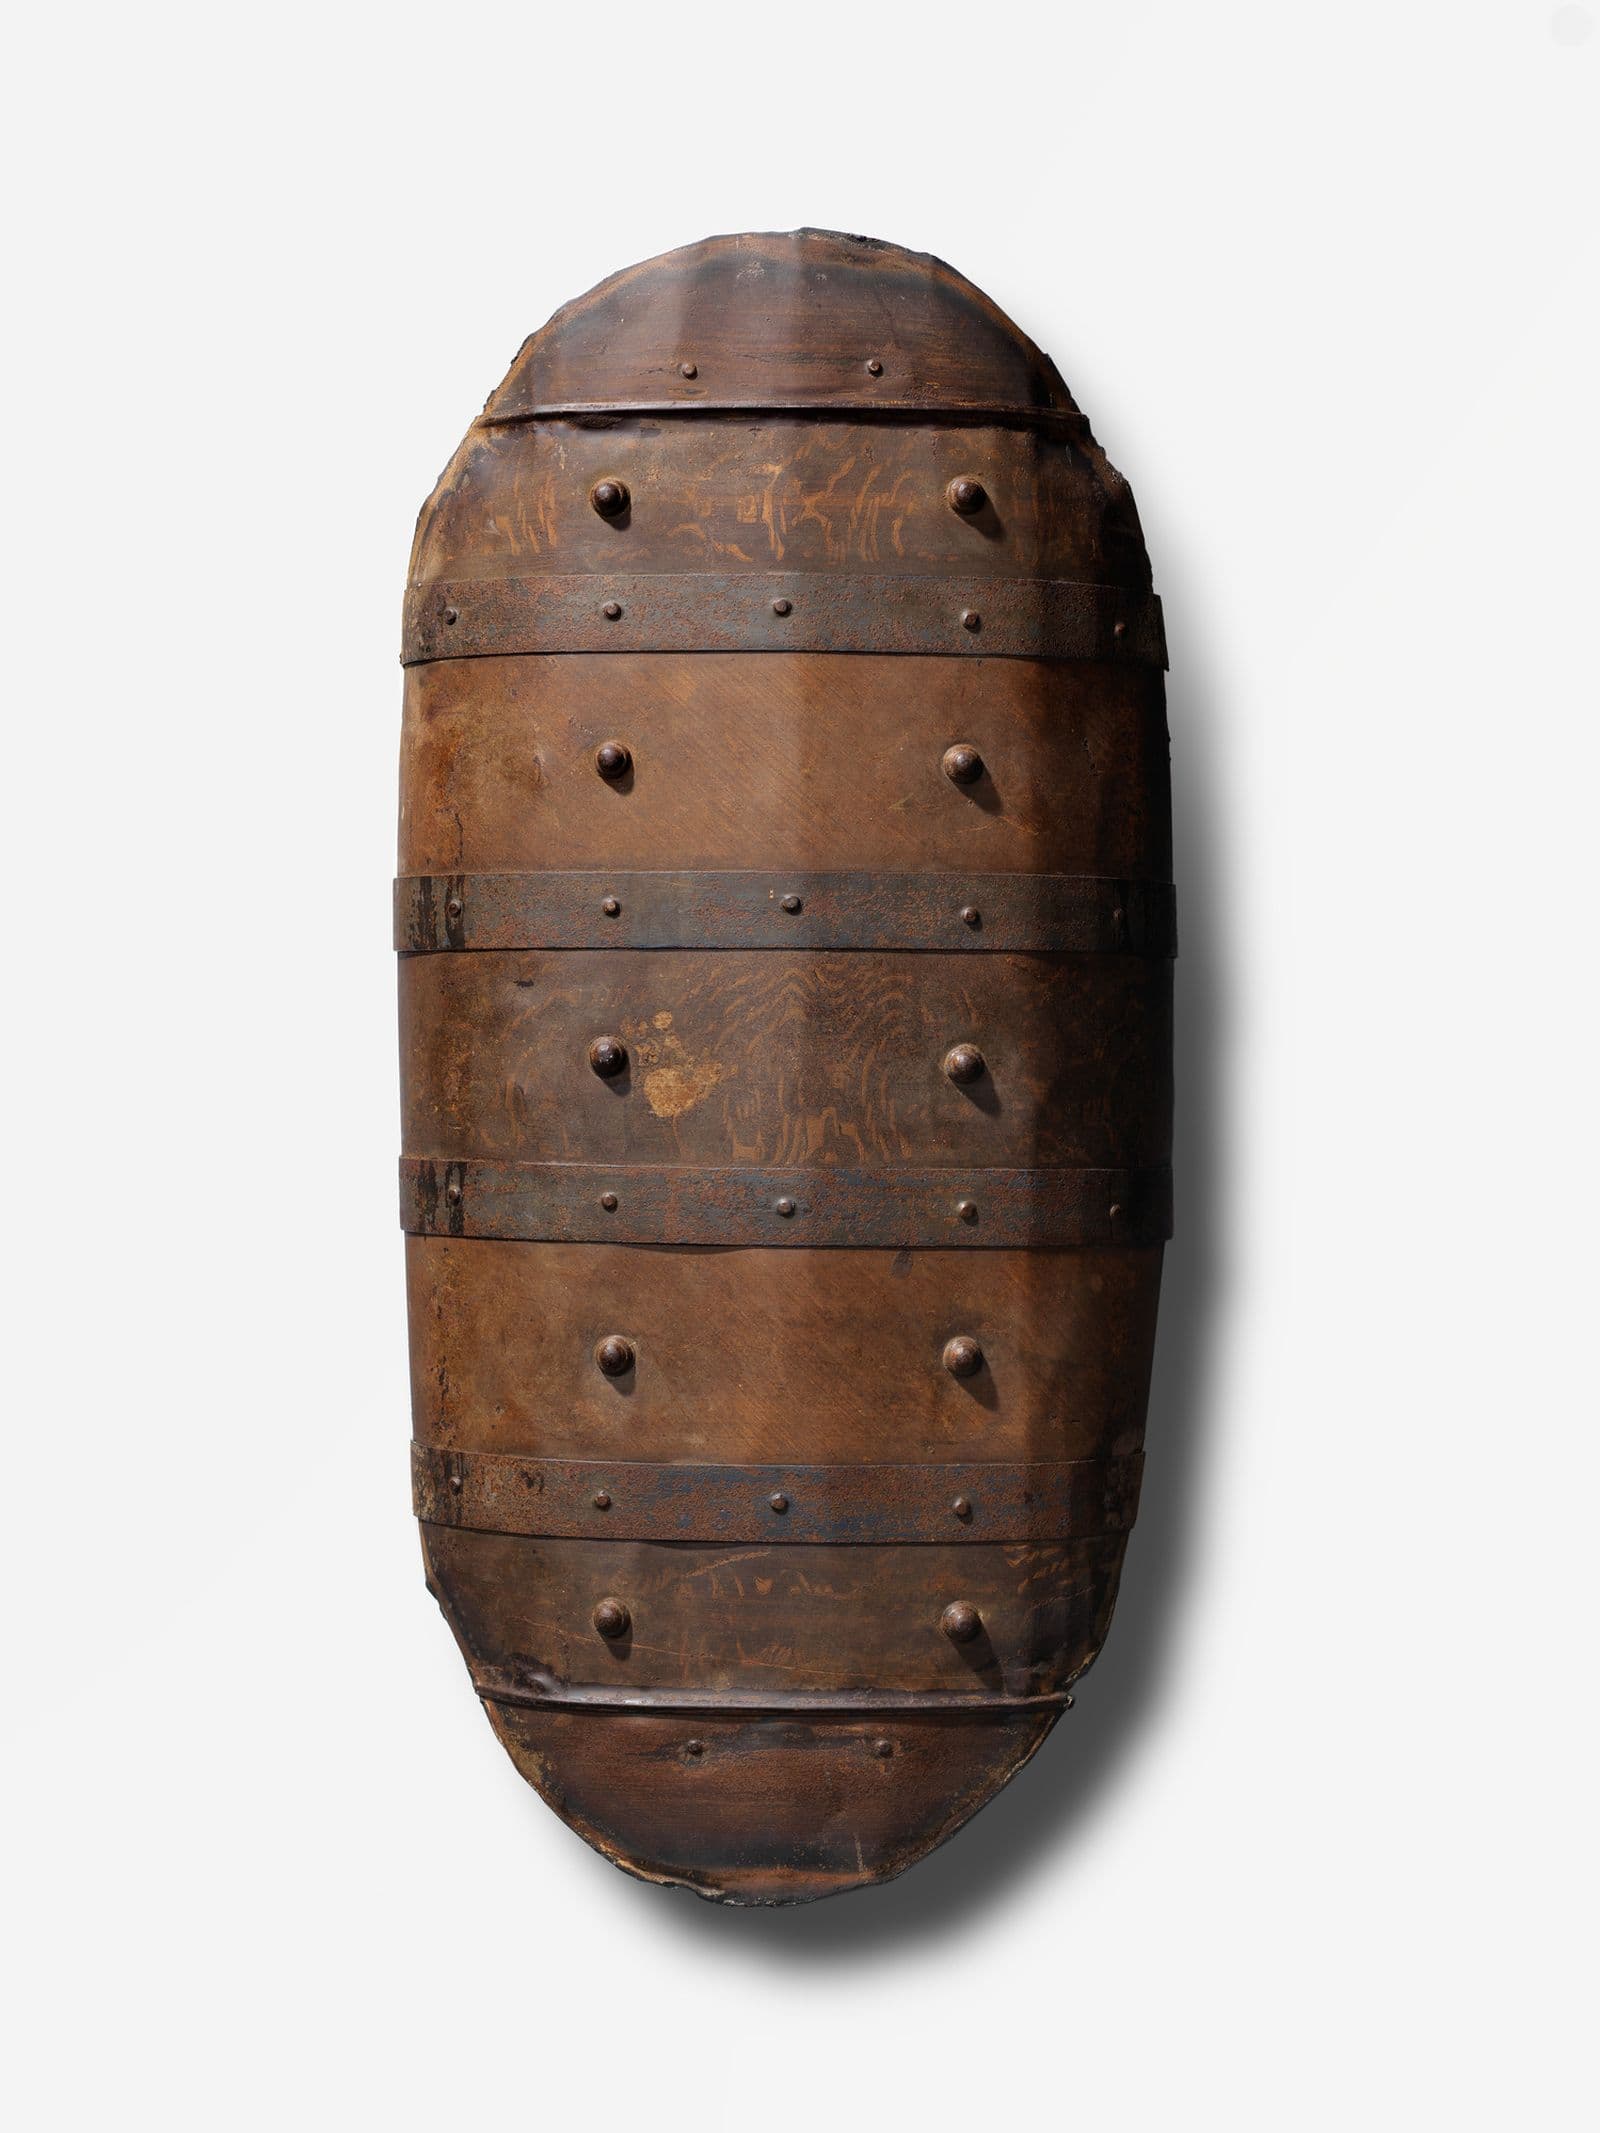 A metal oval-shaped shield